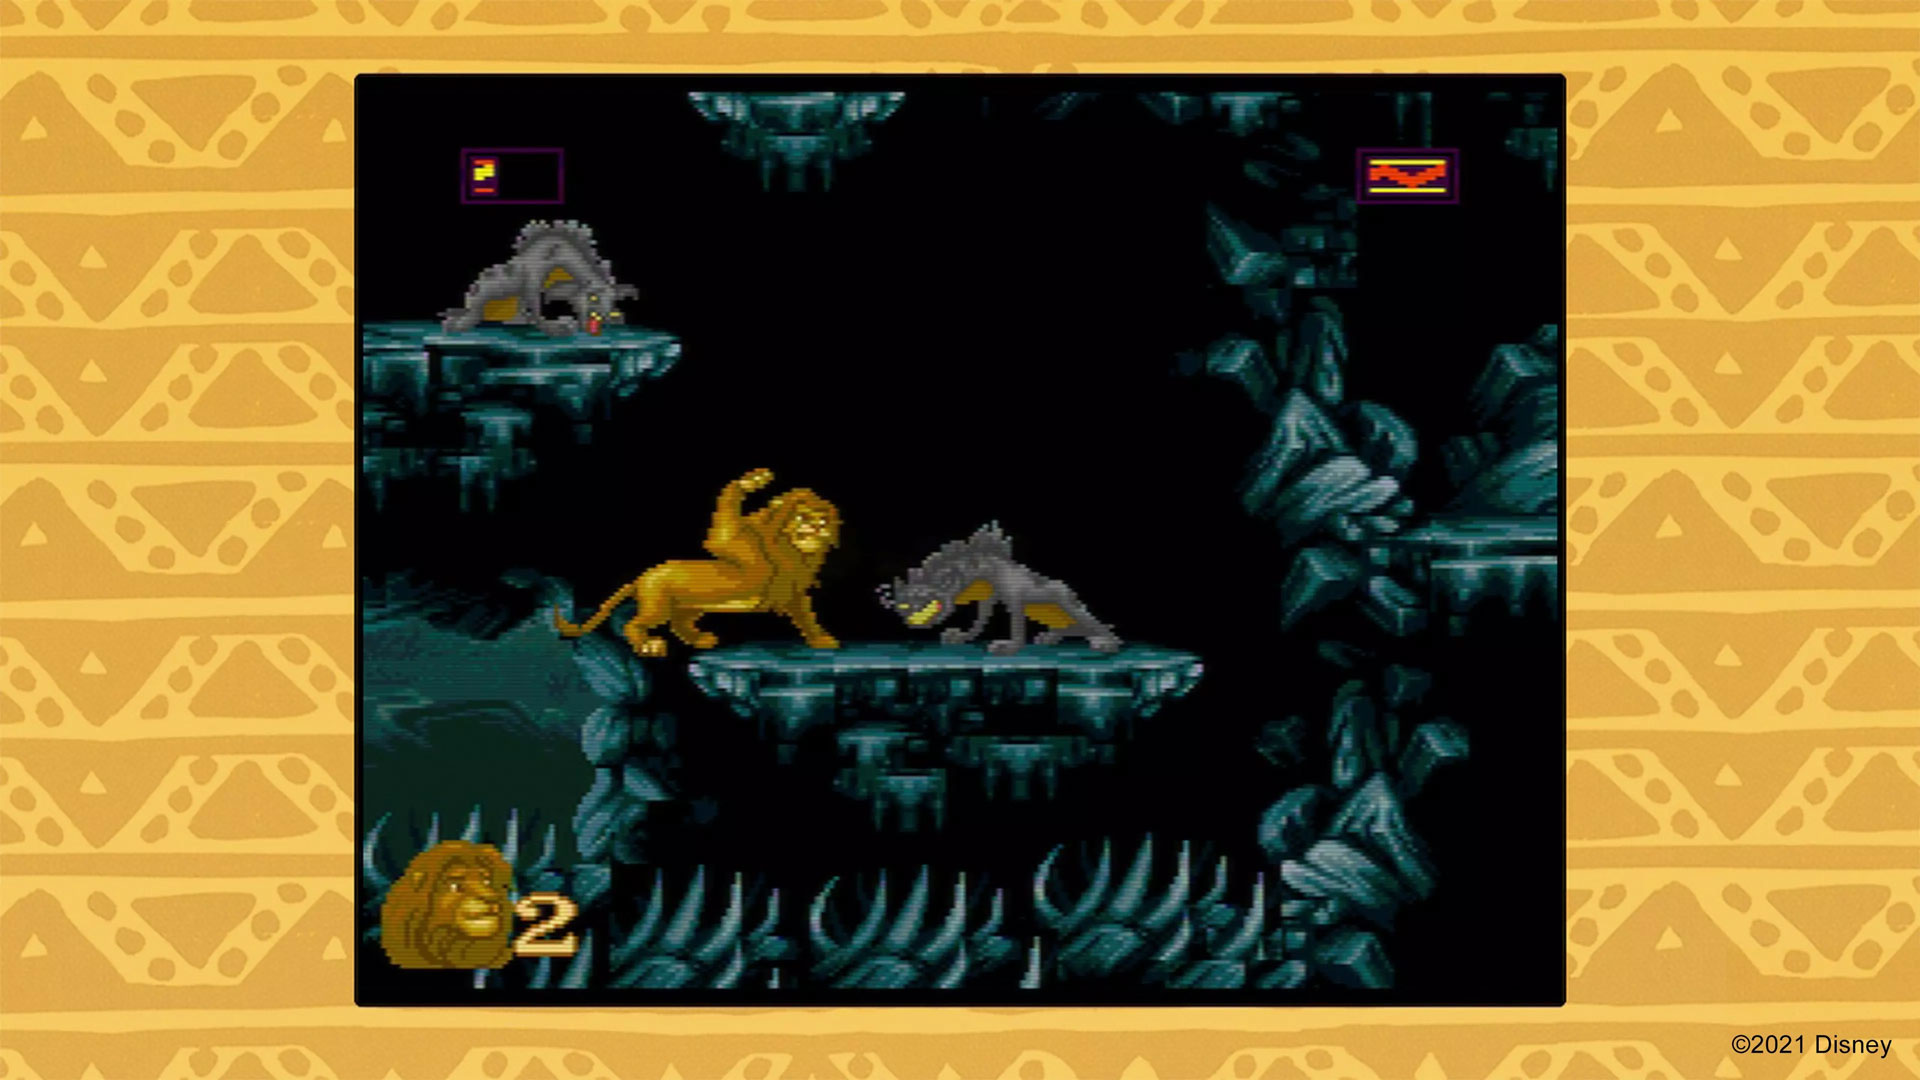 Jogo The Lion King para Super Nintendo - Dicas, análise e imagens